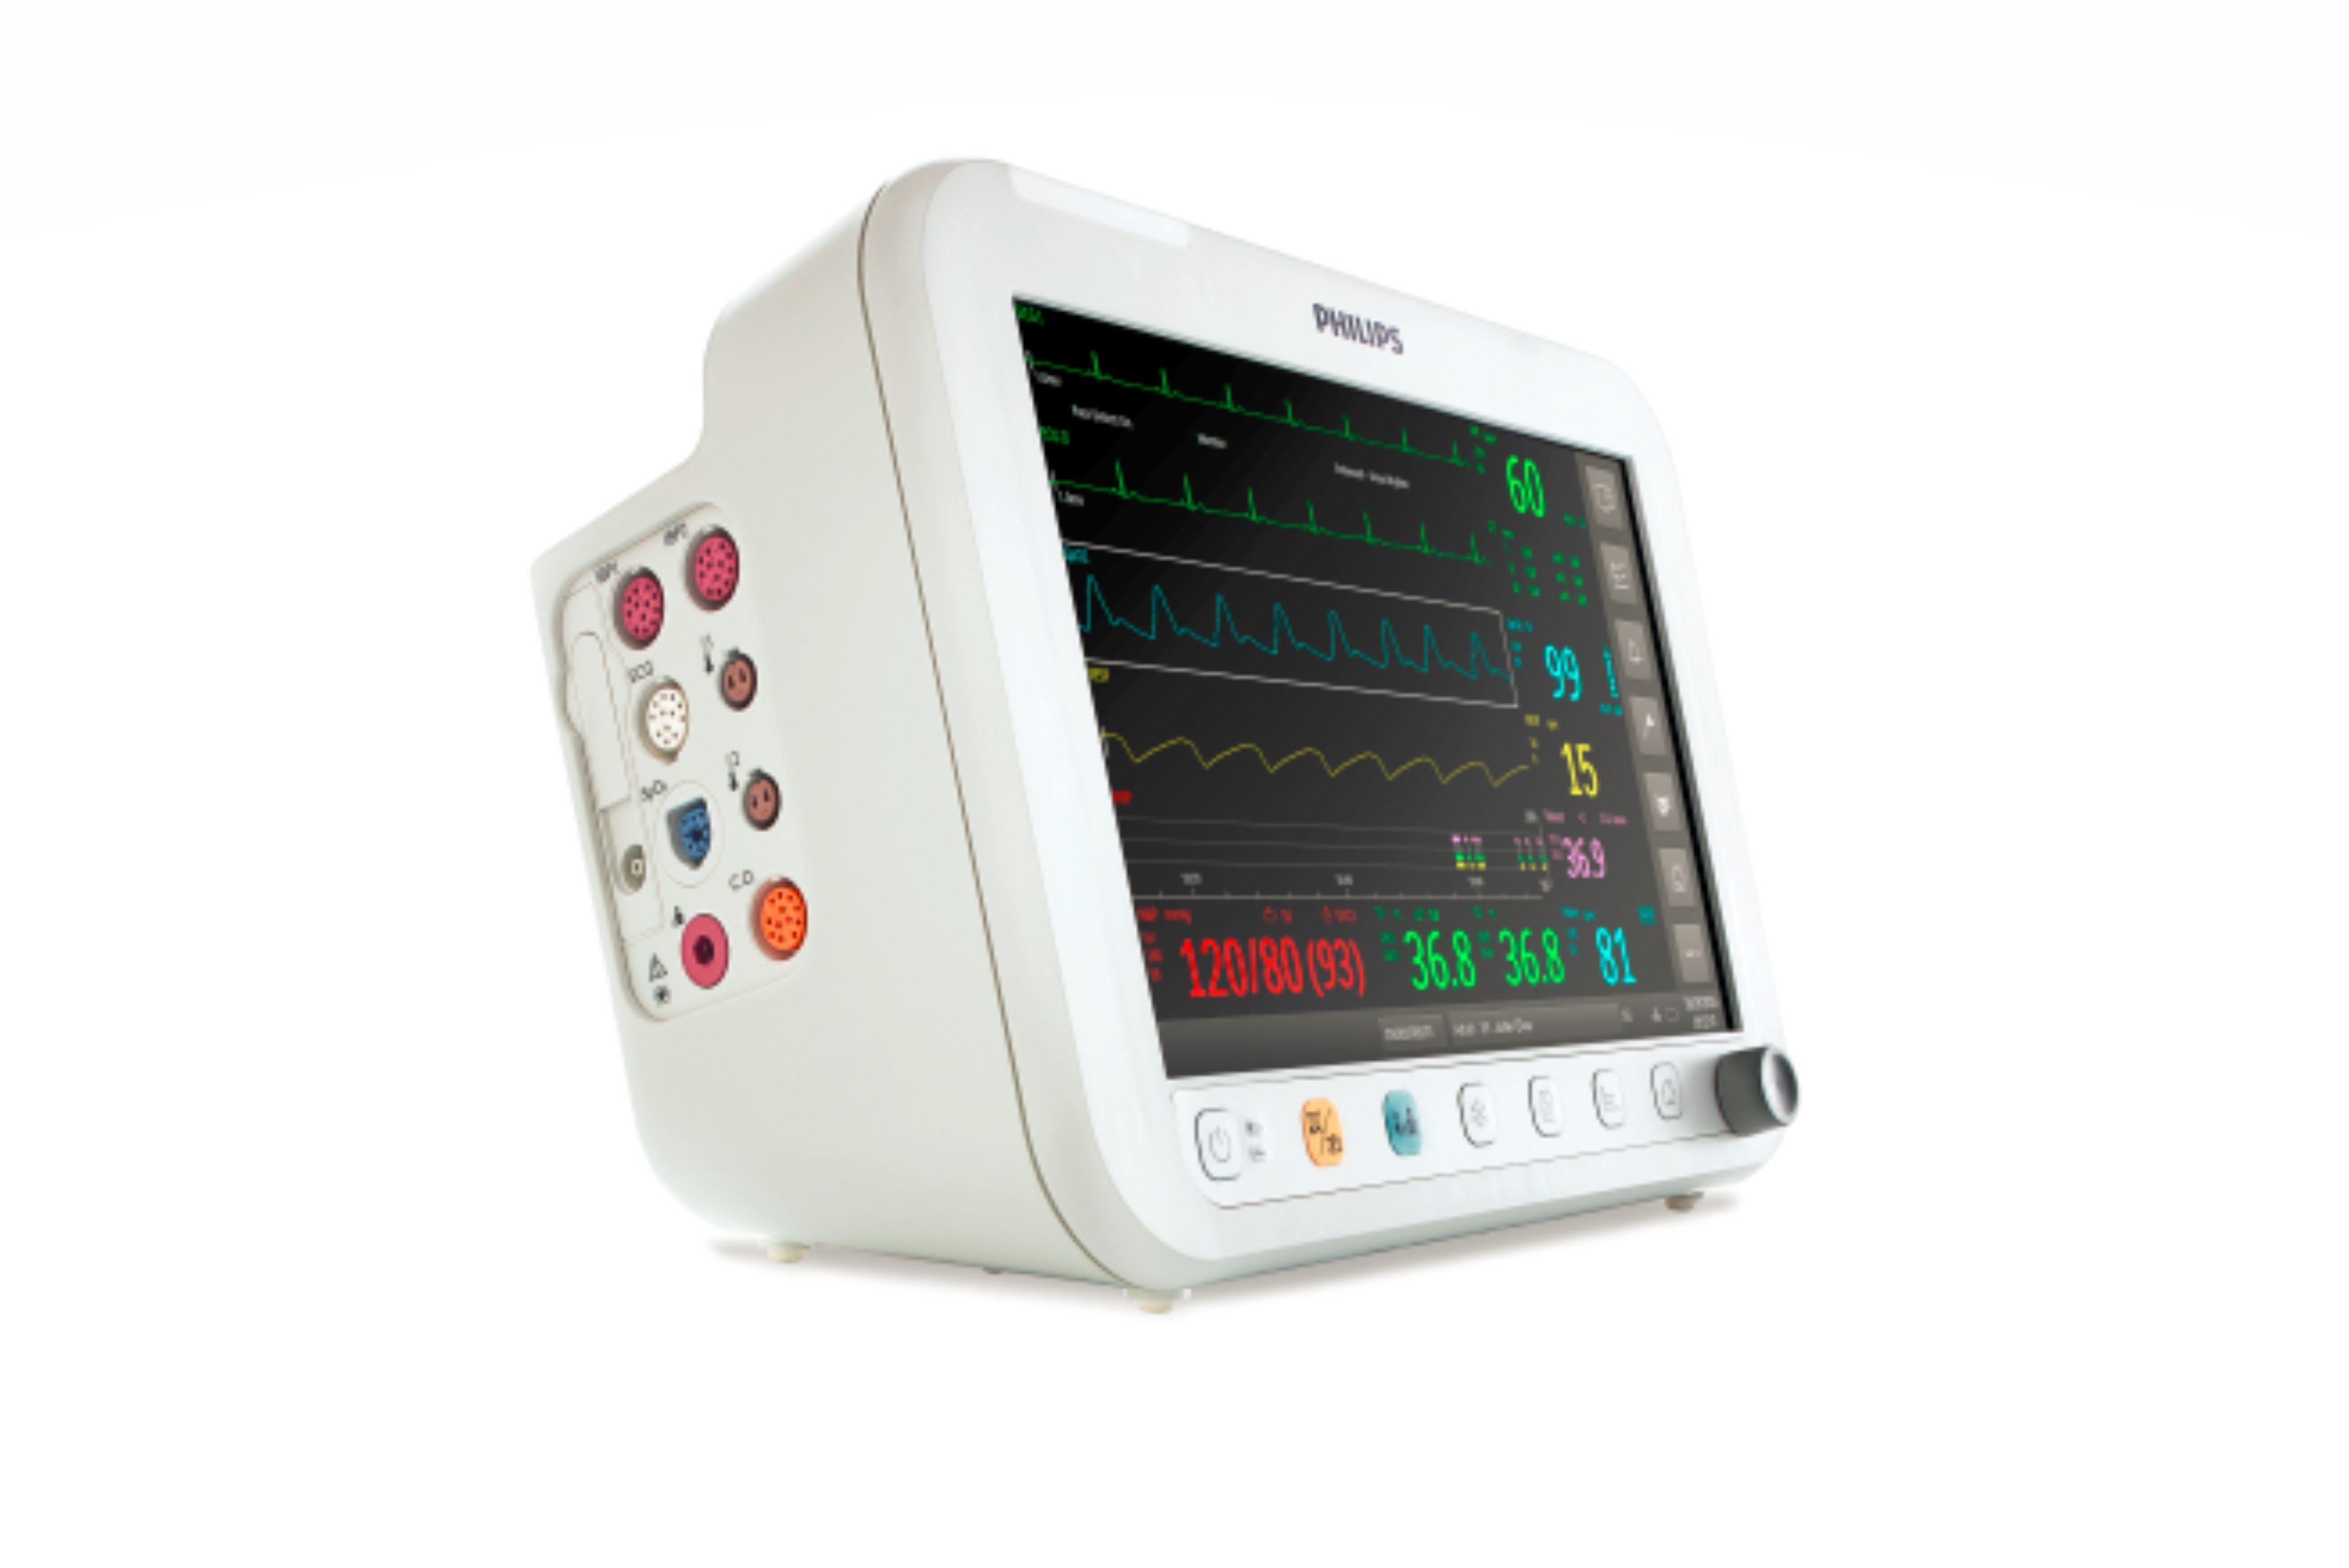 Philips Efficia CM12 Patient Monitor